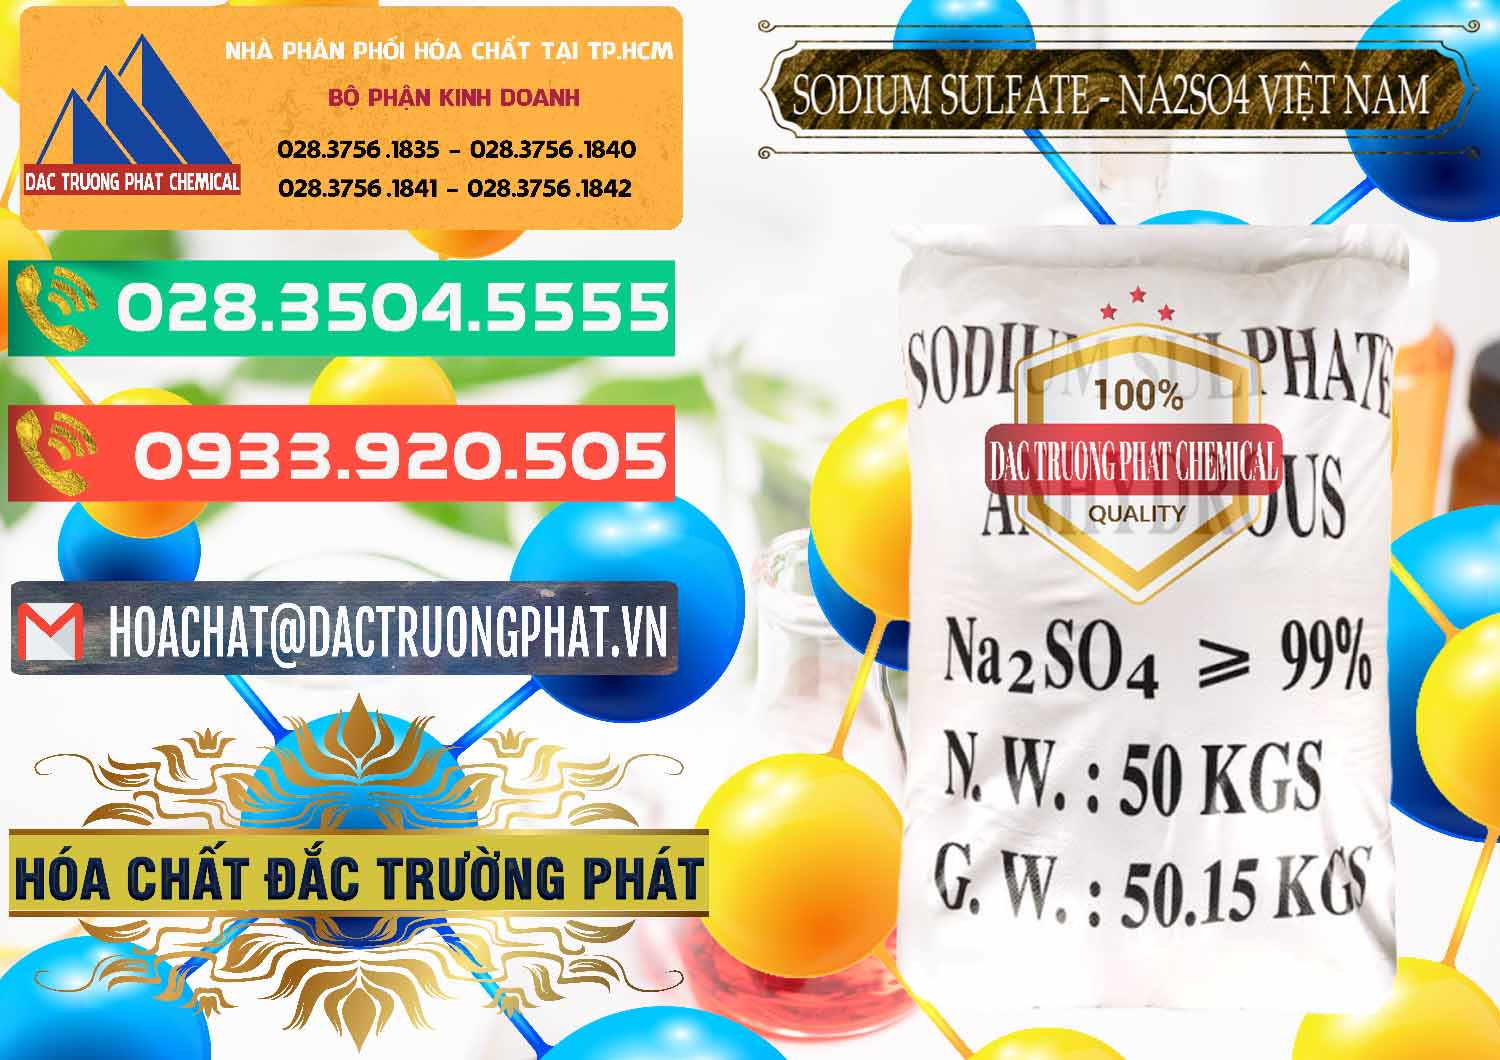 Công ty chuyên kinh doanh & bán Sodium Sulphate - Muối Sunfat Na2SO4 Việt Nam - 0355 - Chuyên phân phối & bán hóa chất tại TP.HCM - congtyhoachat.com.vn